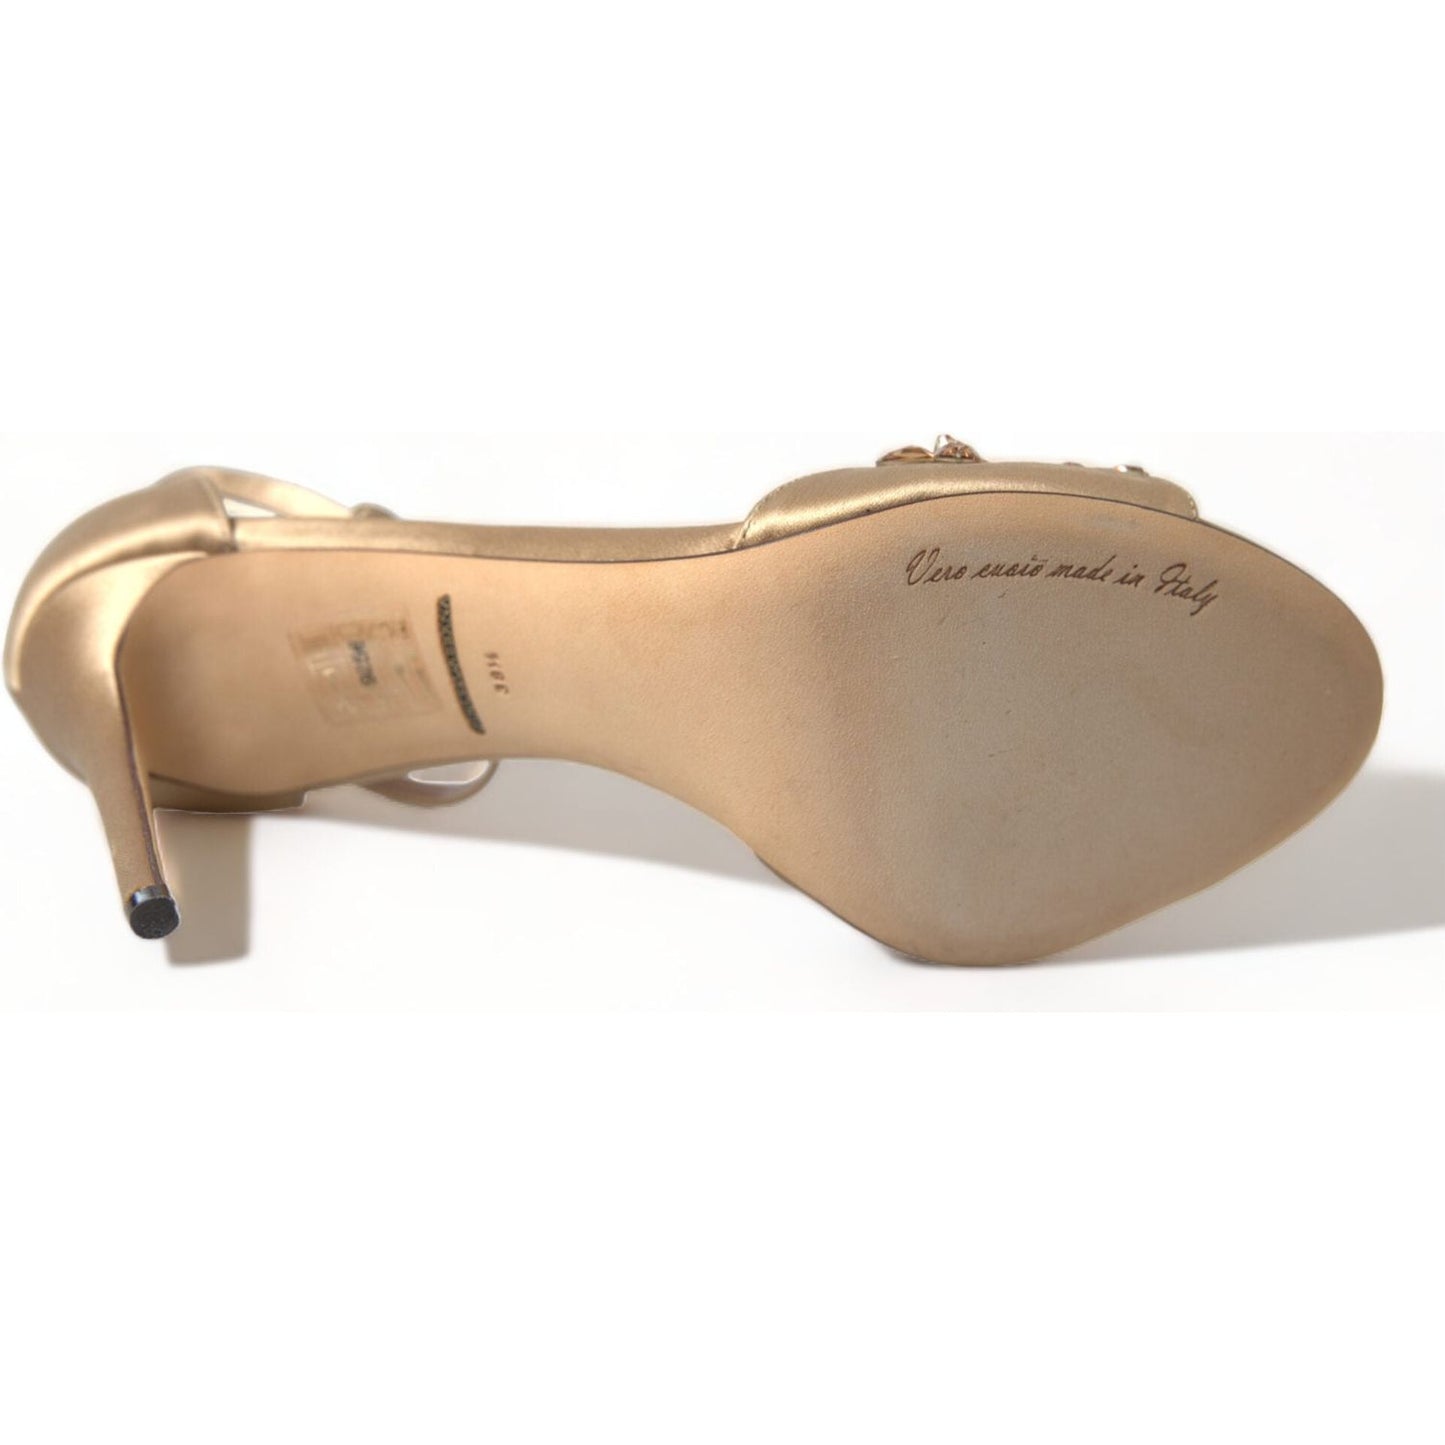 Dolce & Gabbana Crystal Embellished Heel Sandals gold-satin-ankle-strap-crystal-sandals-shoes